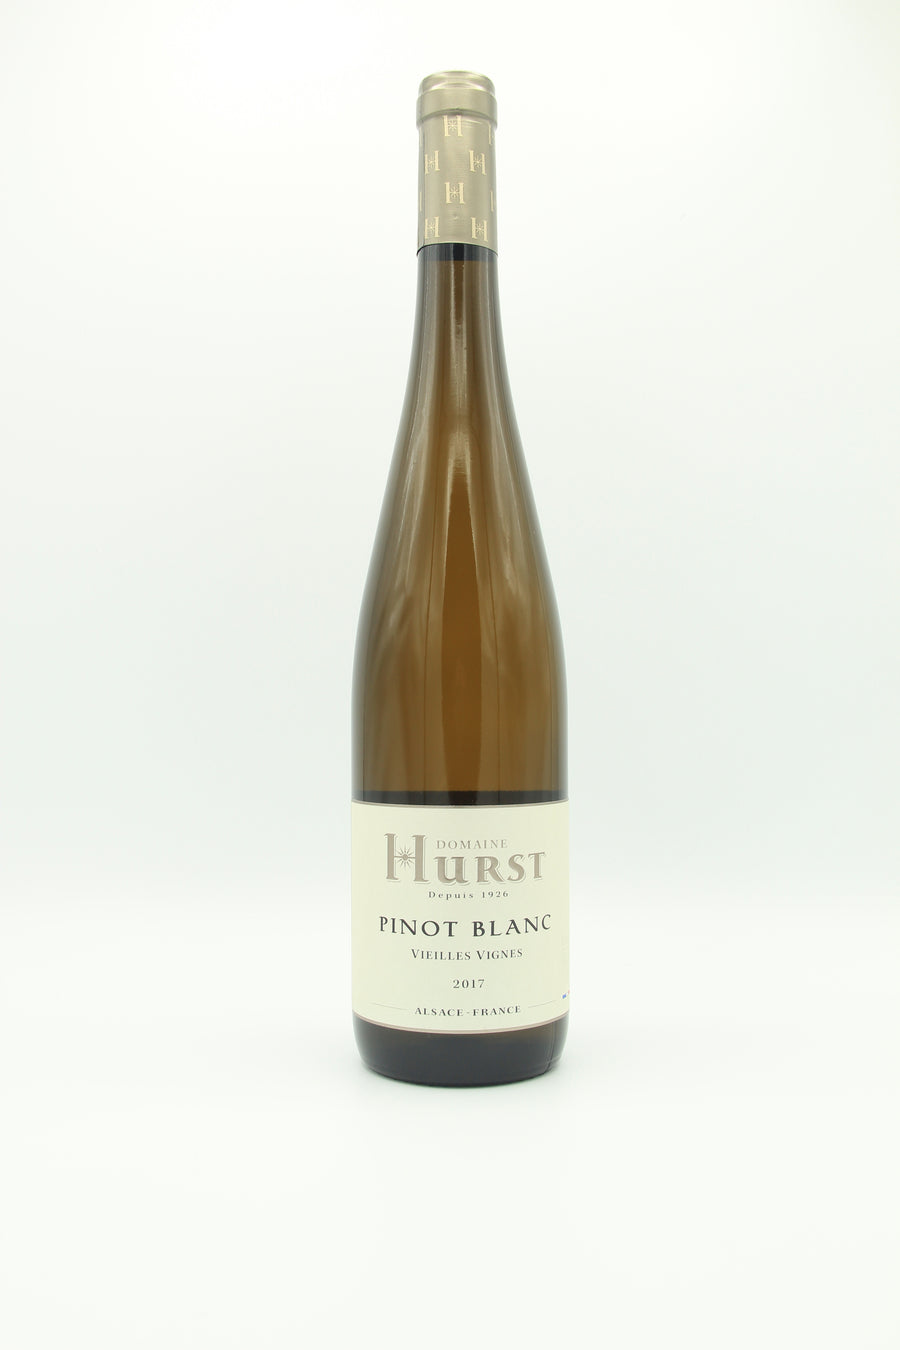 Domaine Hurst Pinot Blanc Vieilles Vignes